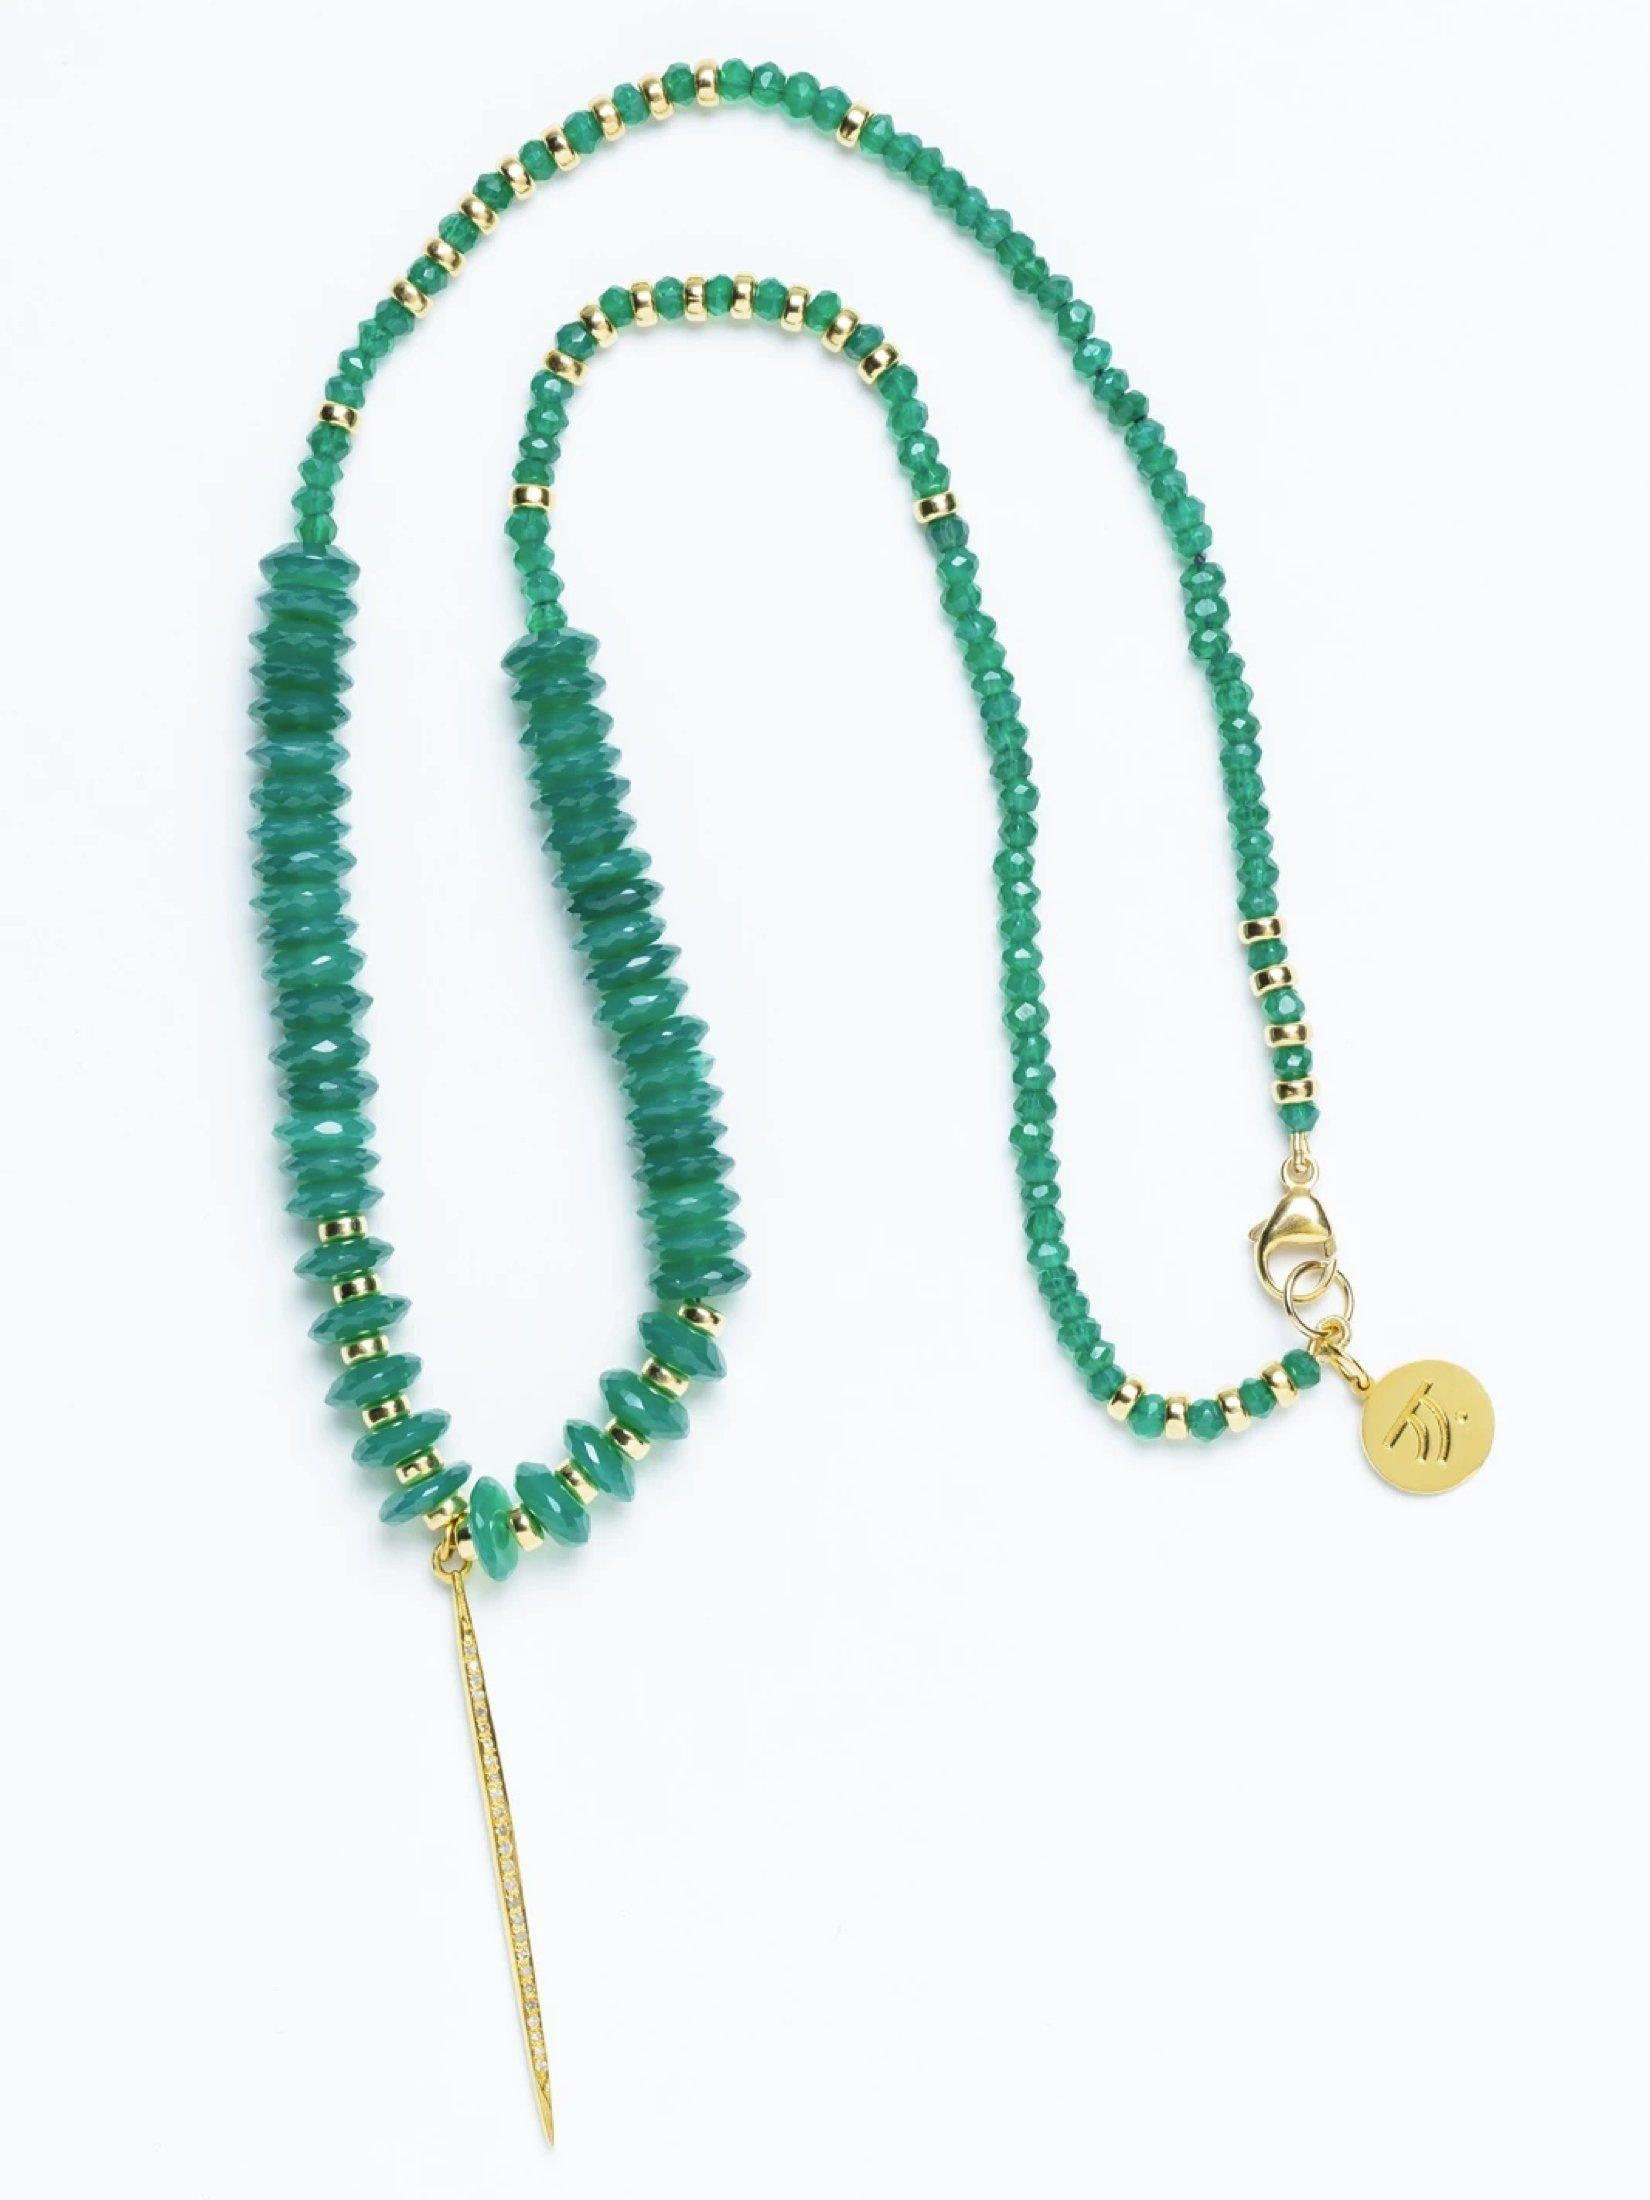 Brilliant Cut Diamond Emerald Green Love Necklace For Sale